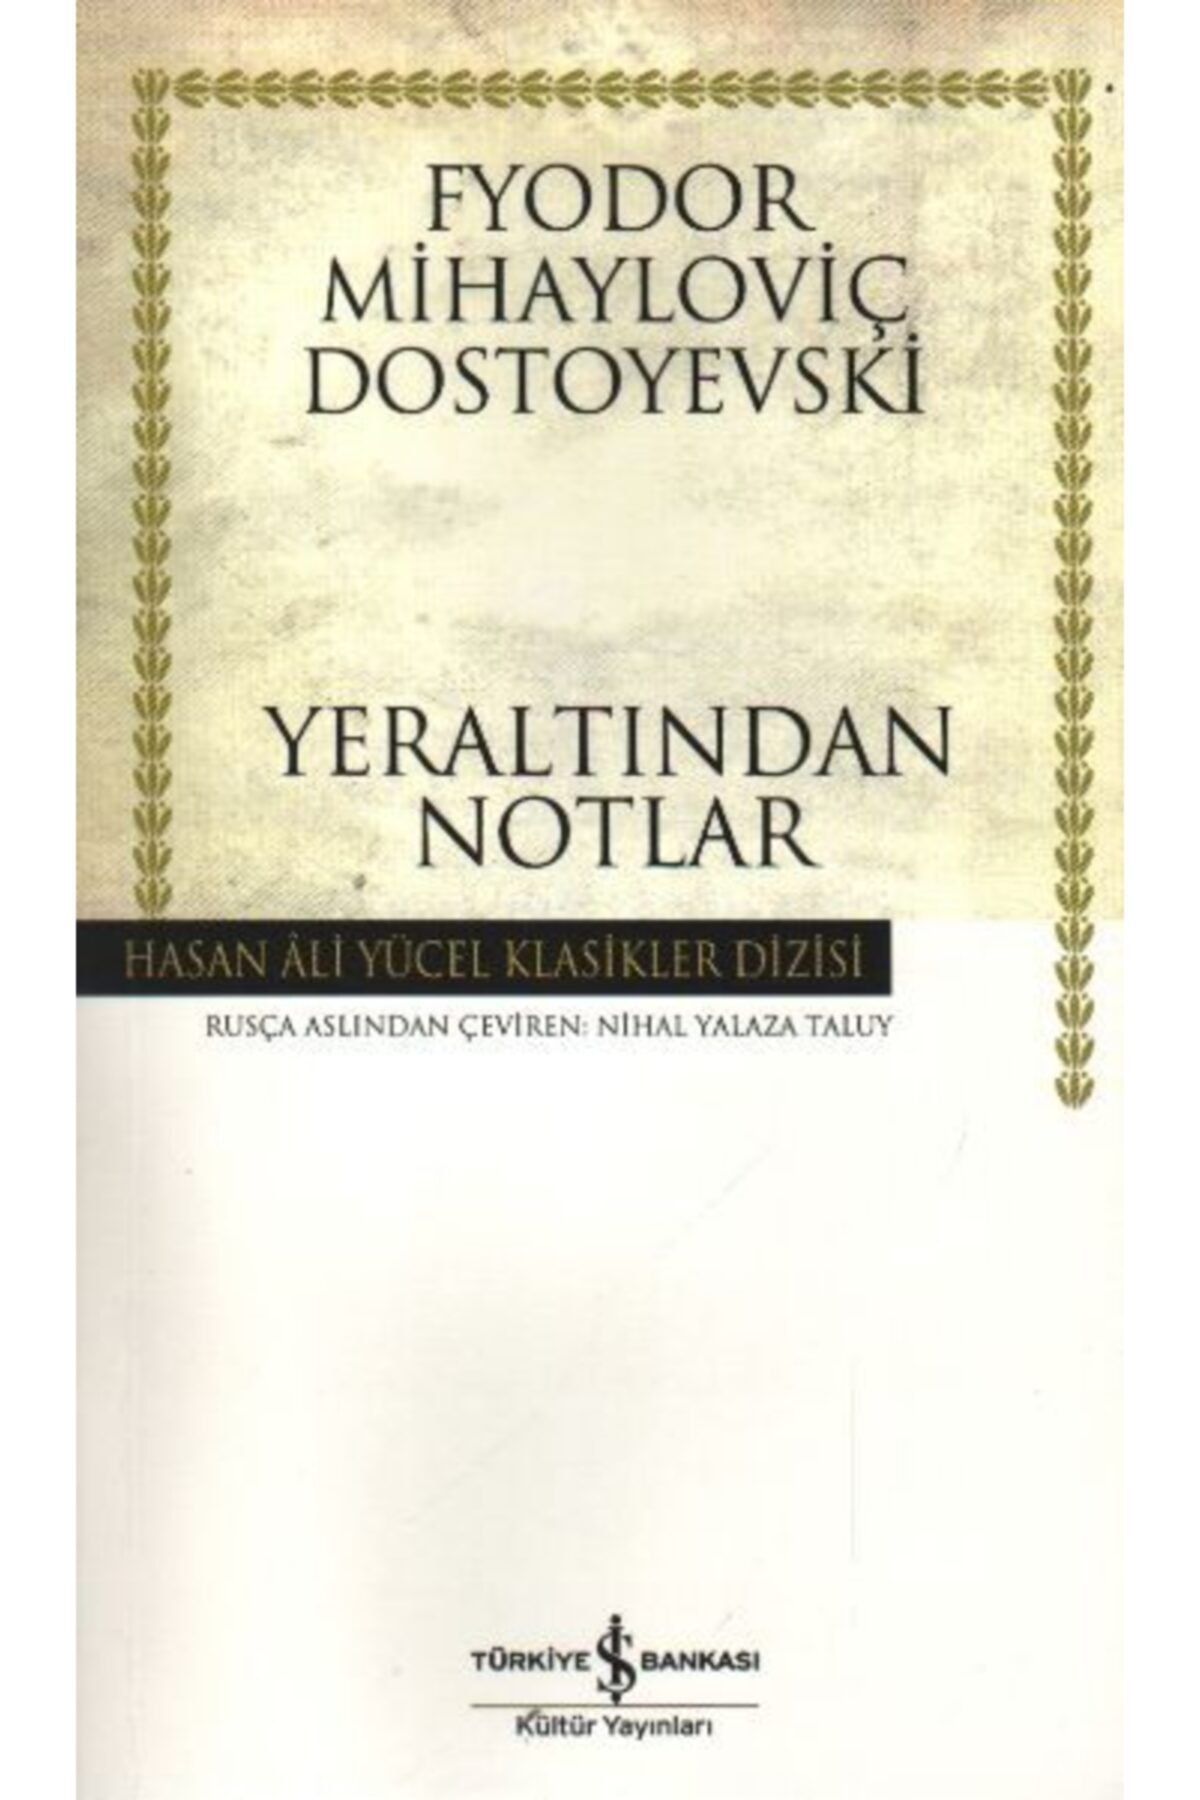 Türkiye İş Bankası Kültür Yayınları Yeraltından Notlar - Fyodor Mihailoviç Dostoyevski -